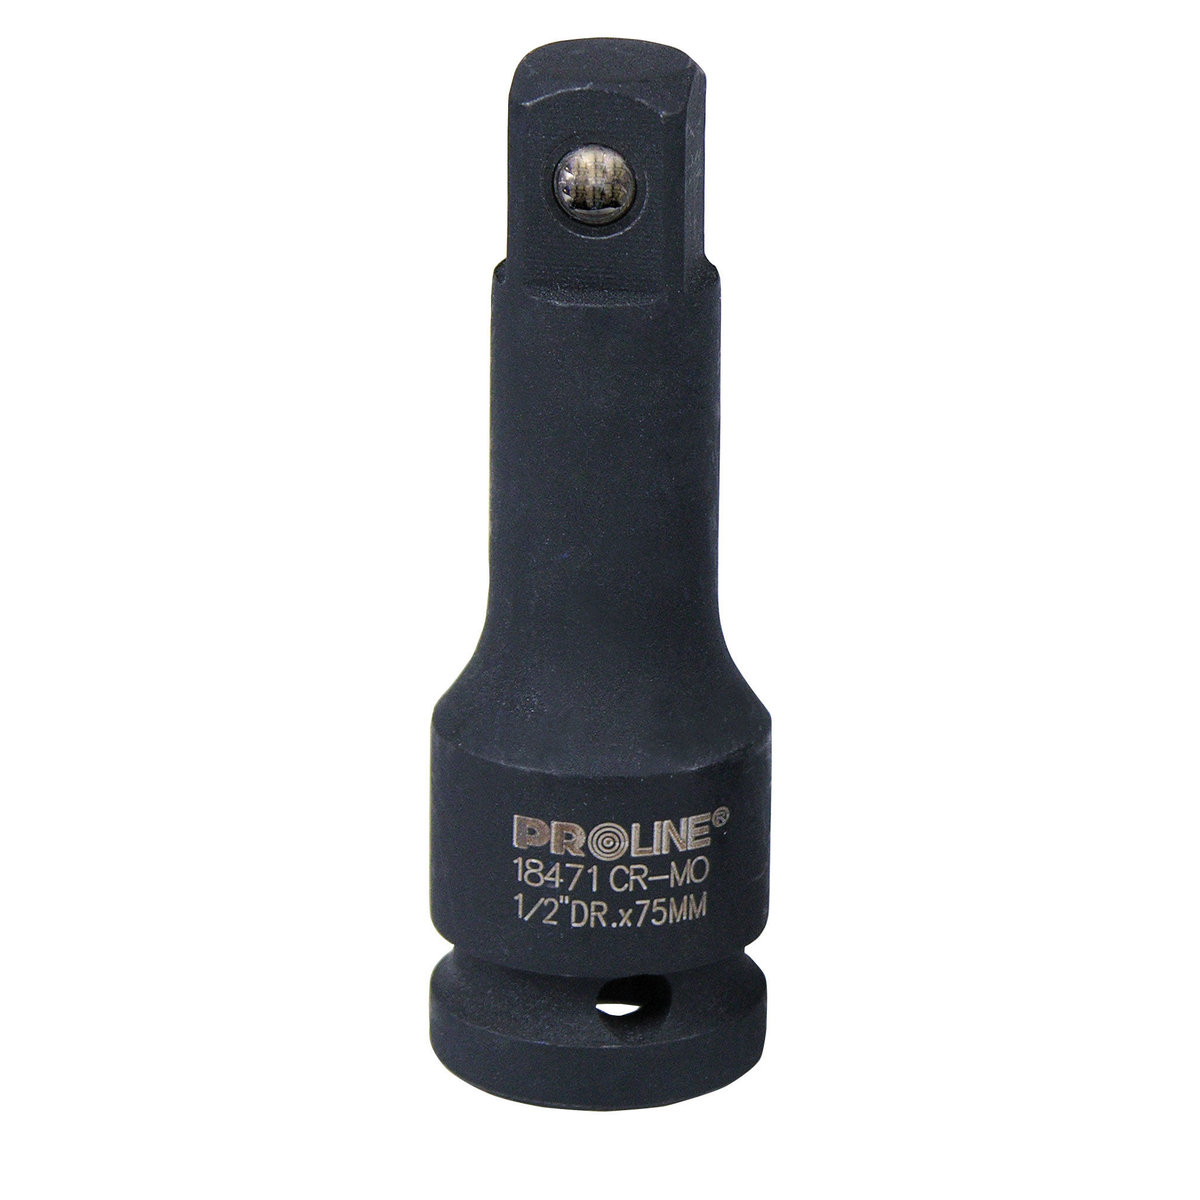 Proline przedłużka 1/2 L 125mm CrMo SCM-440 18472